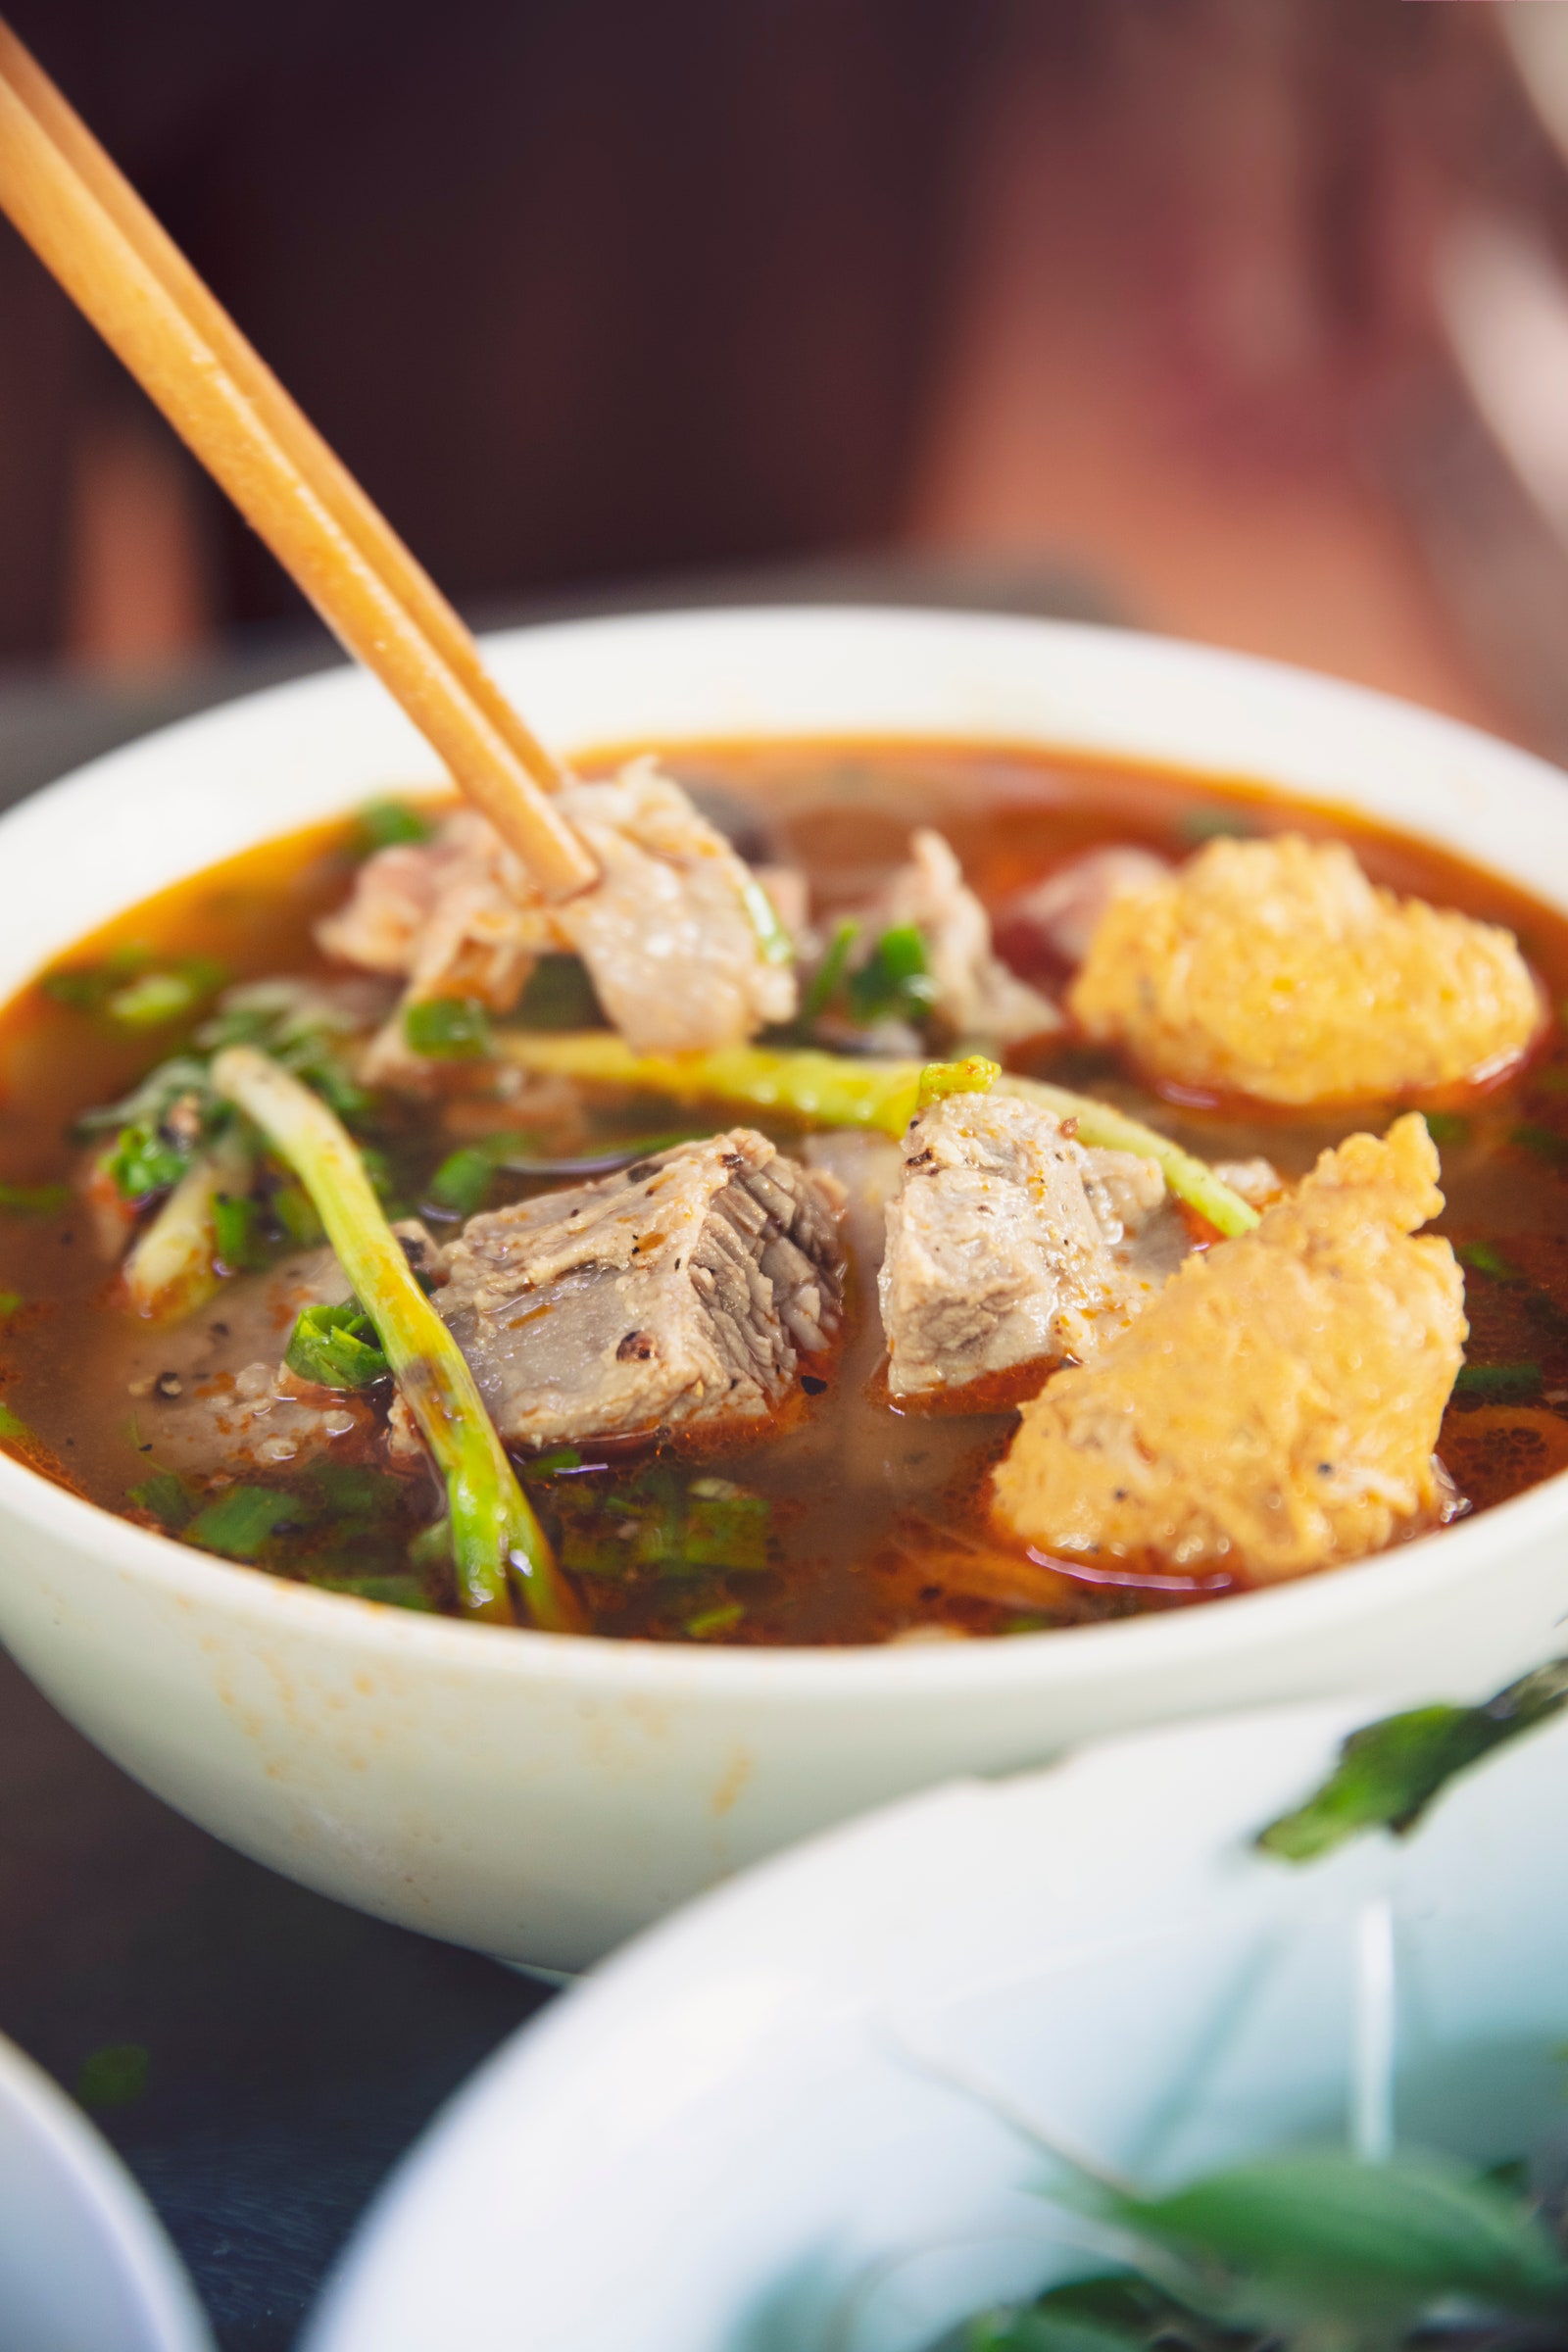 Ăn gì ở Việt Nam: 29 món nhất định phải thưởng thức ngoài Phở và Bánh mì - Ảnh 2.